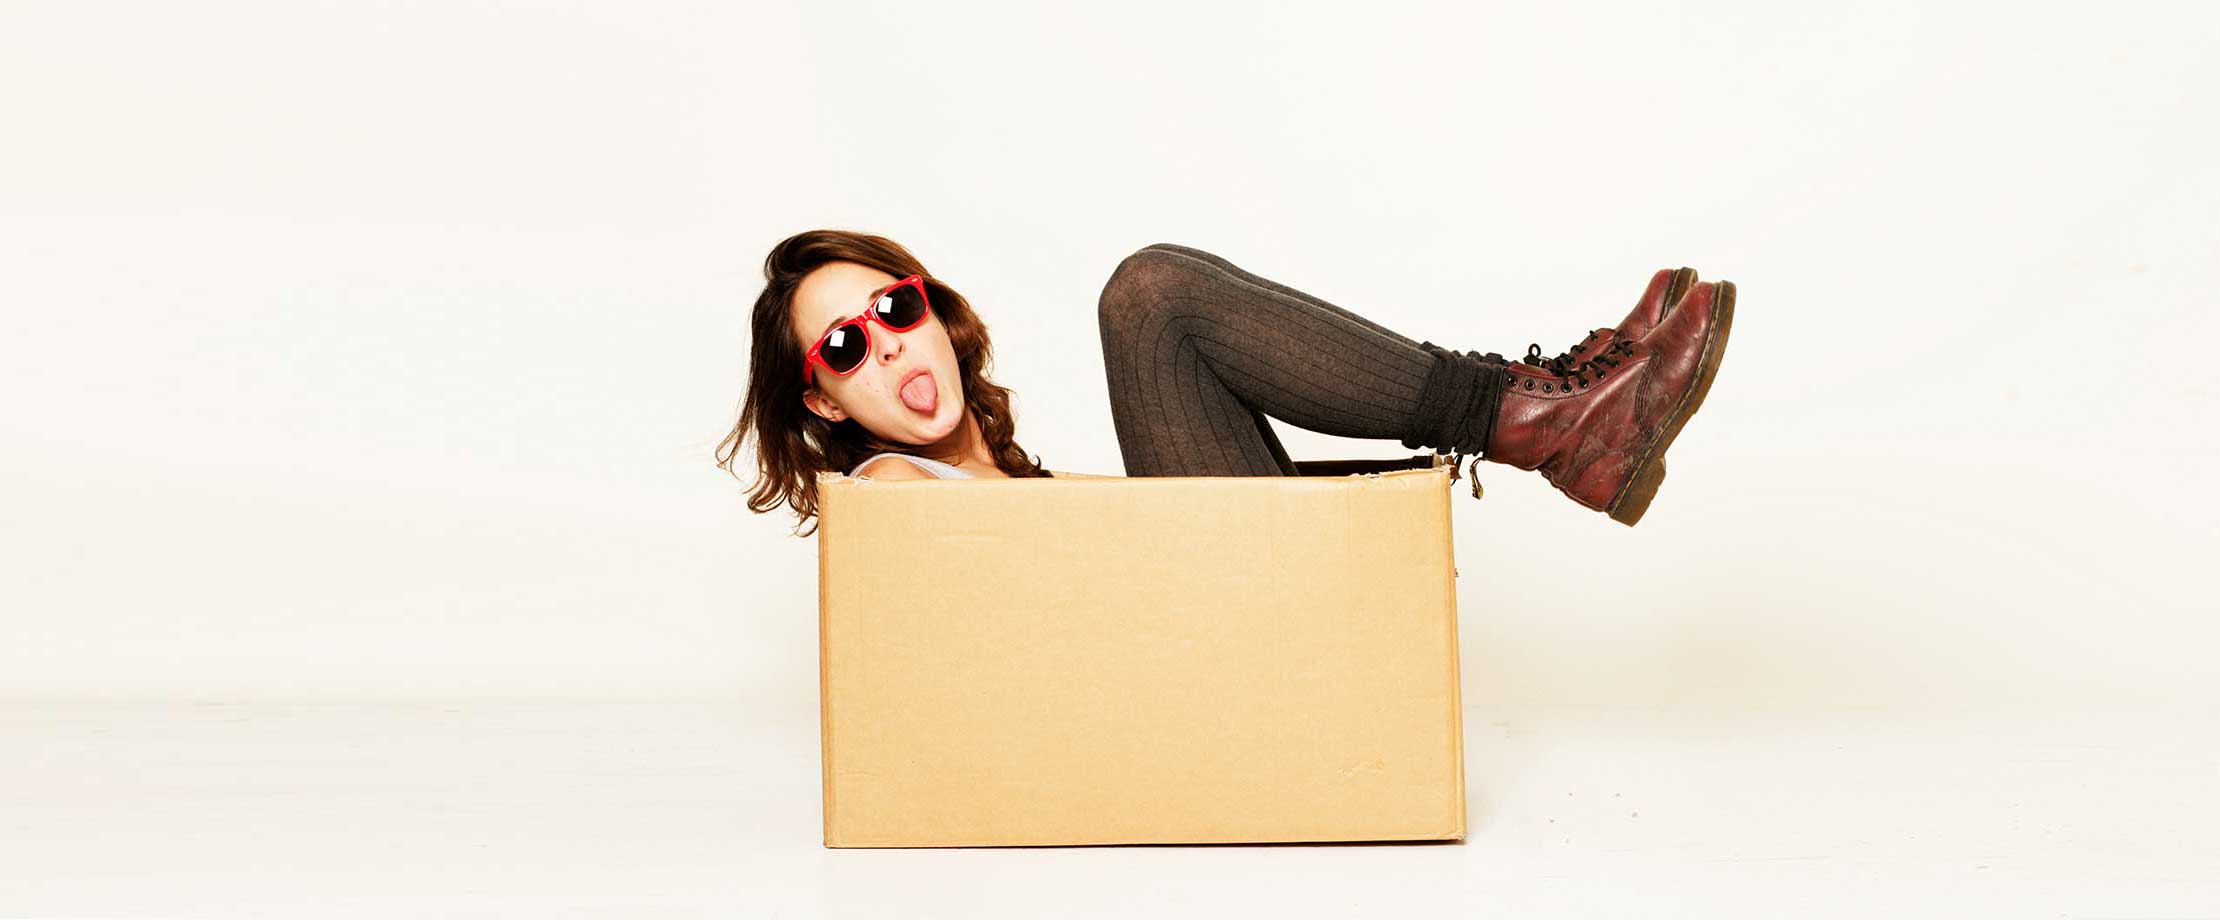 Eine junge Frau mit Sonnenbrille streckt frech ihre Zunge heraus. Sie sitzt in einem Karton und hält ihre Füße angewinkelt in die Luft.